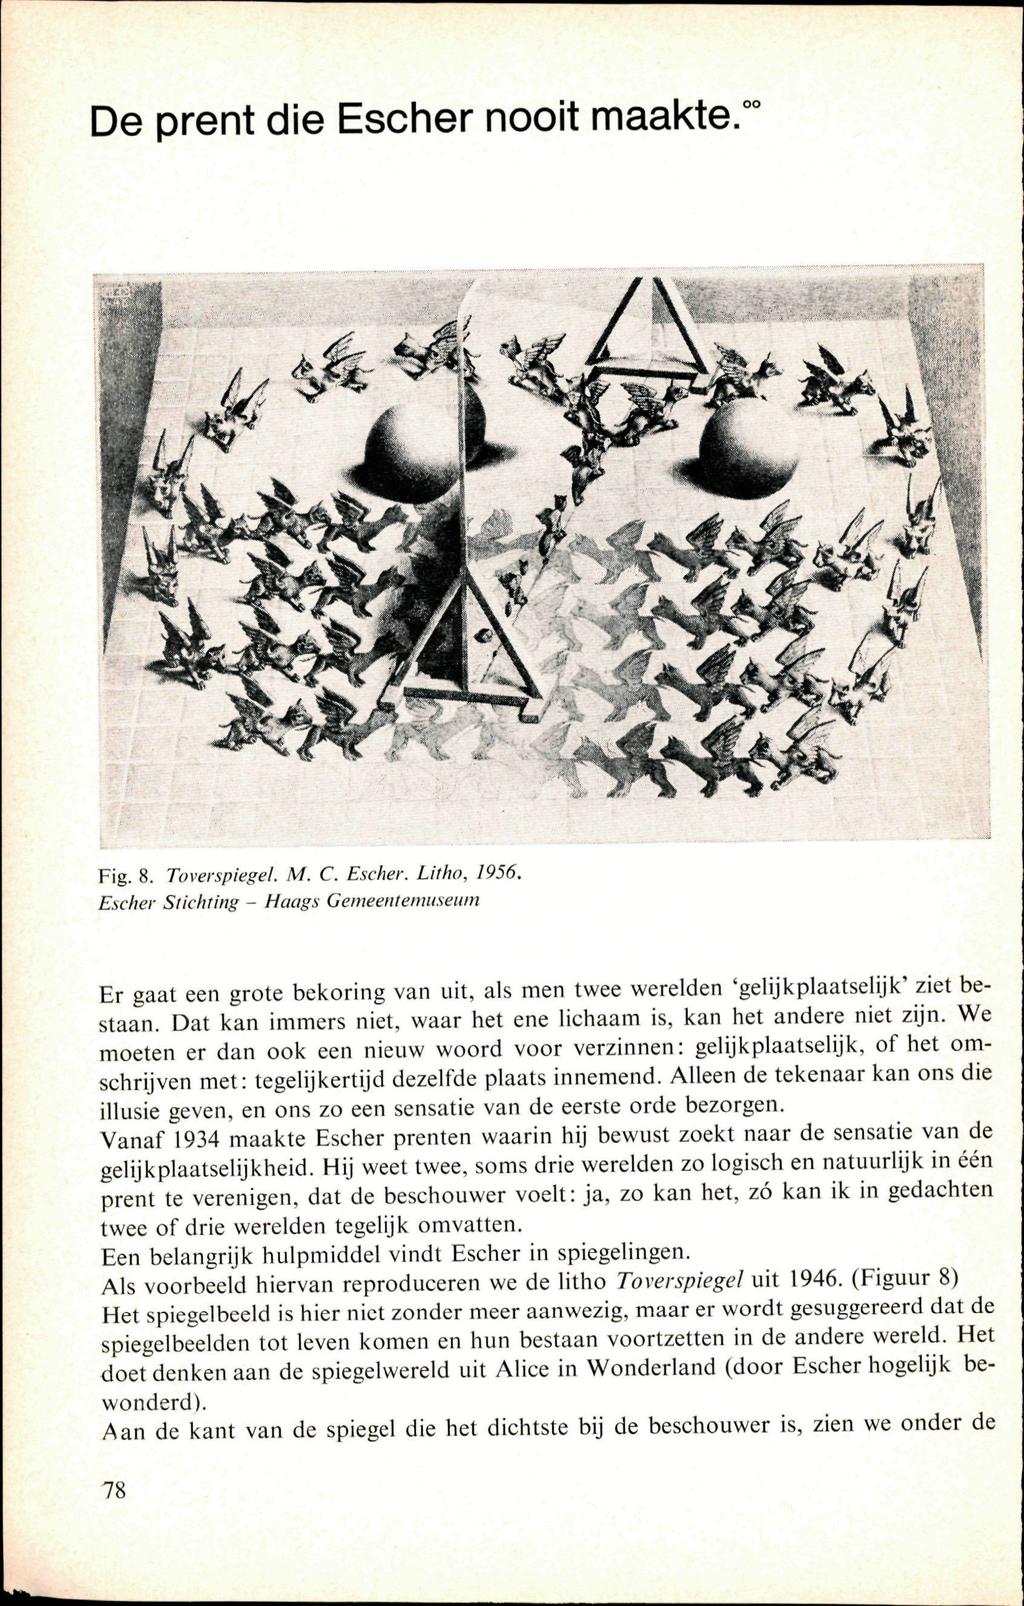 De prent die Escher nooit maakte. Fig. 8. Toverspiegel. M. C. Escher. Litho, 1956.